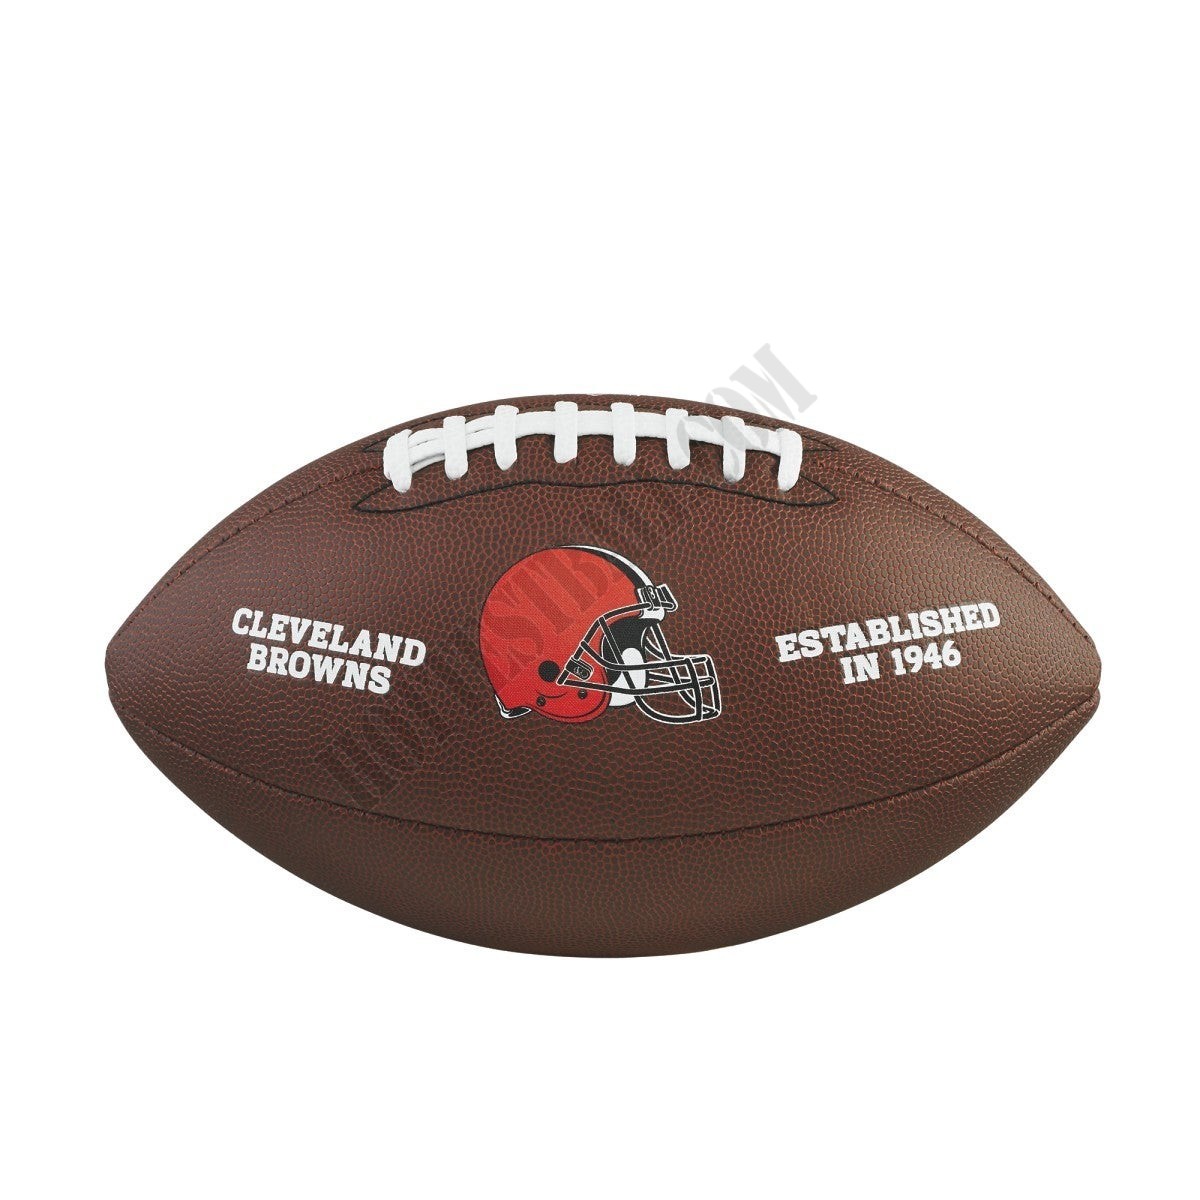 NFL Backyard Legend Football - Cleveland Browns ● Wilson Promotions - NFL Backyard Legend Football - Cleveland Browns ● Wilson Promotions